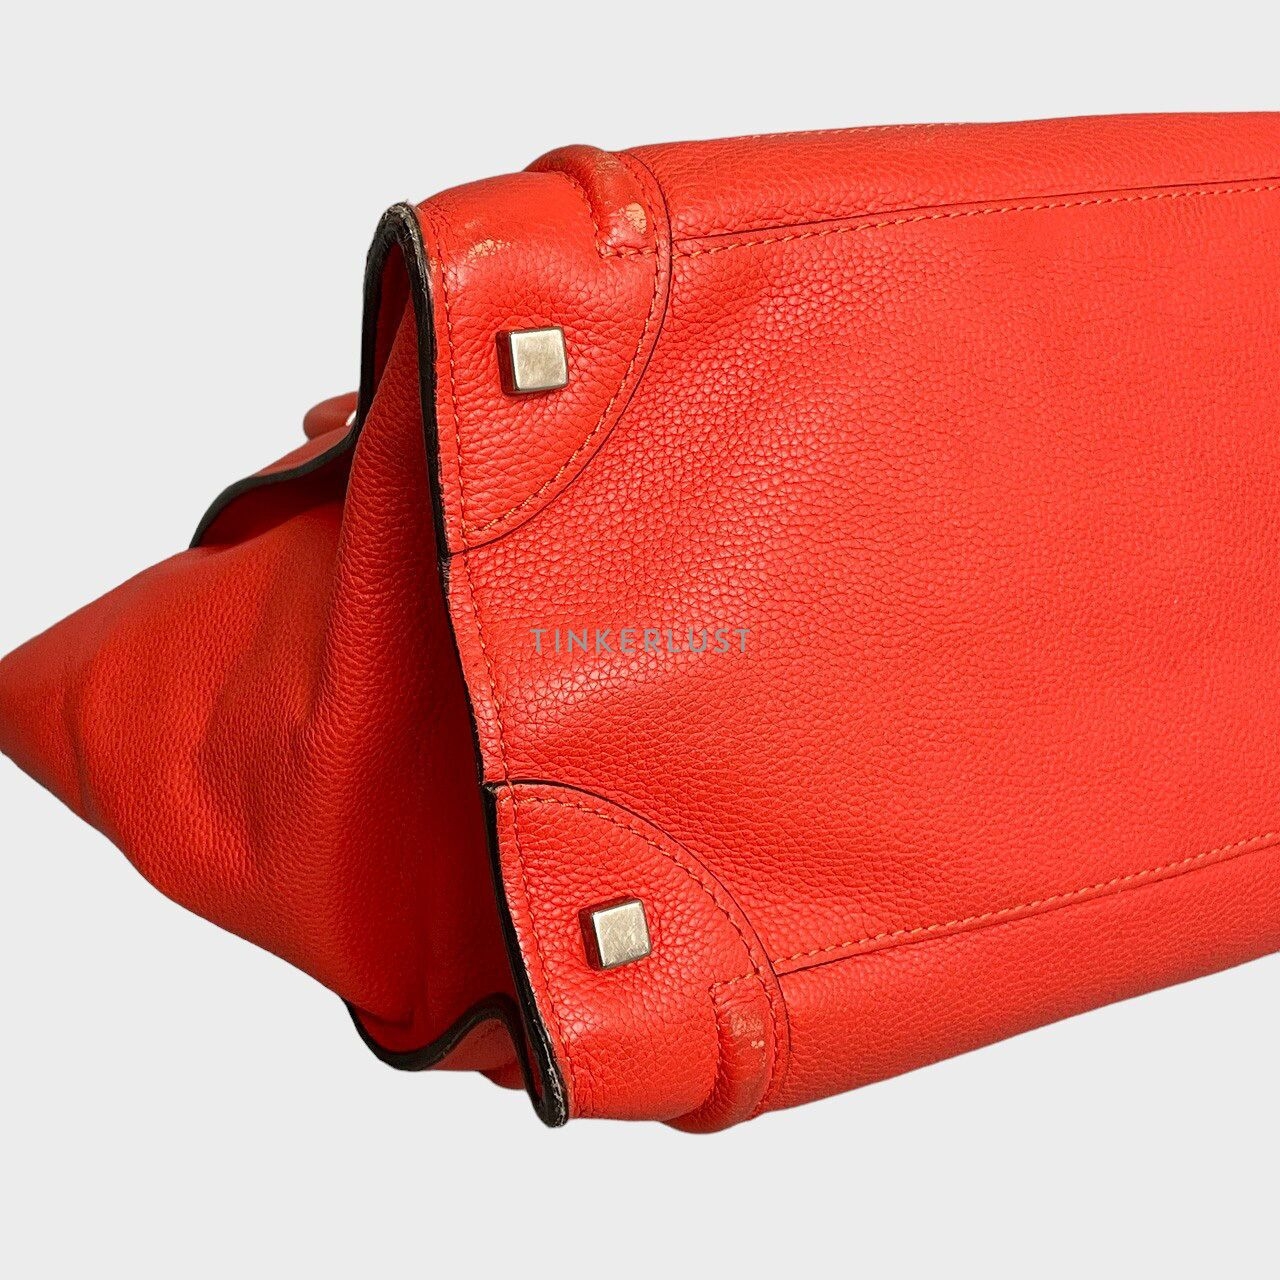 Celine Mini Luggage Vermillion Pebbled Leather Handbag